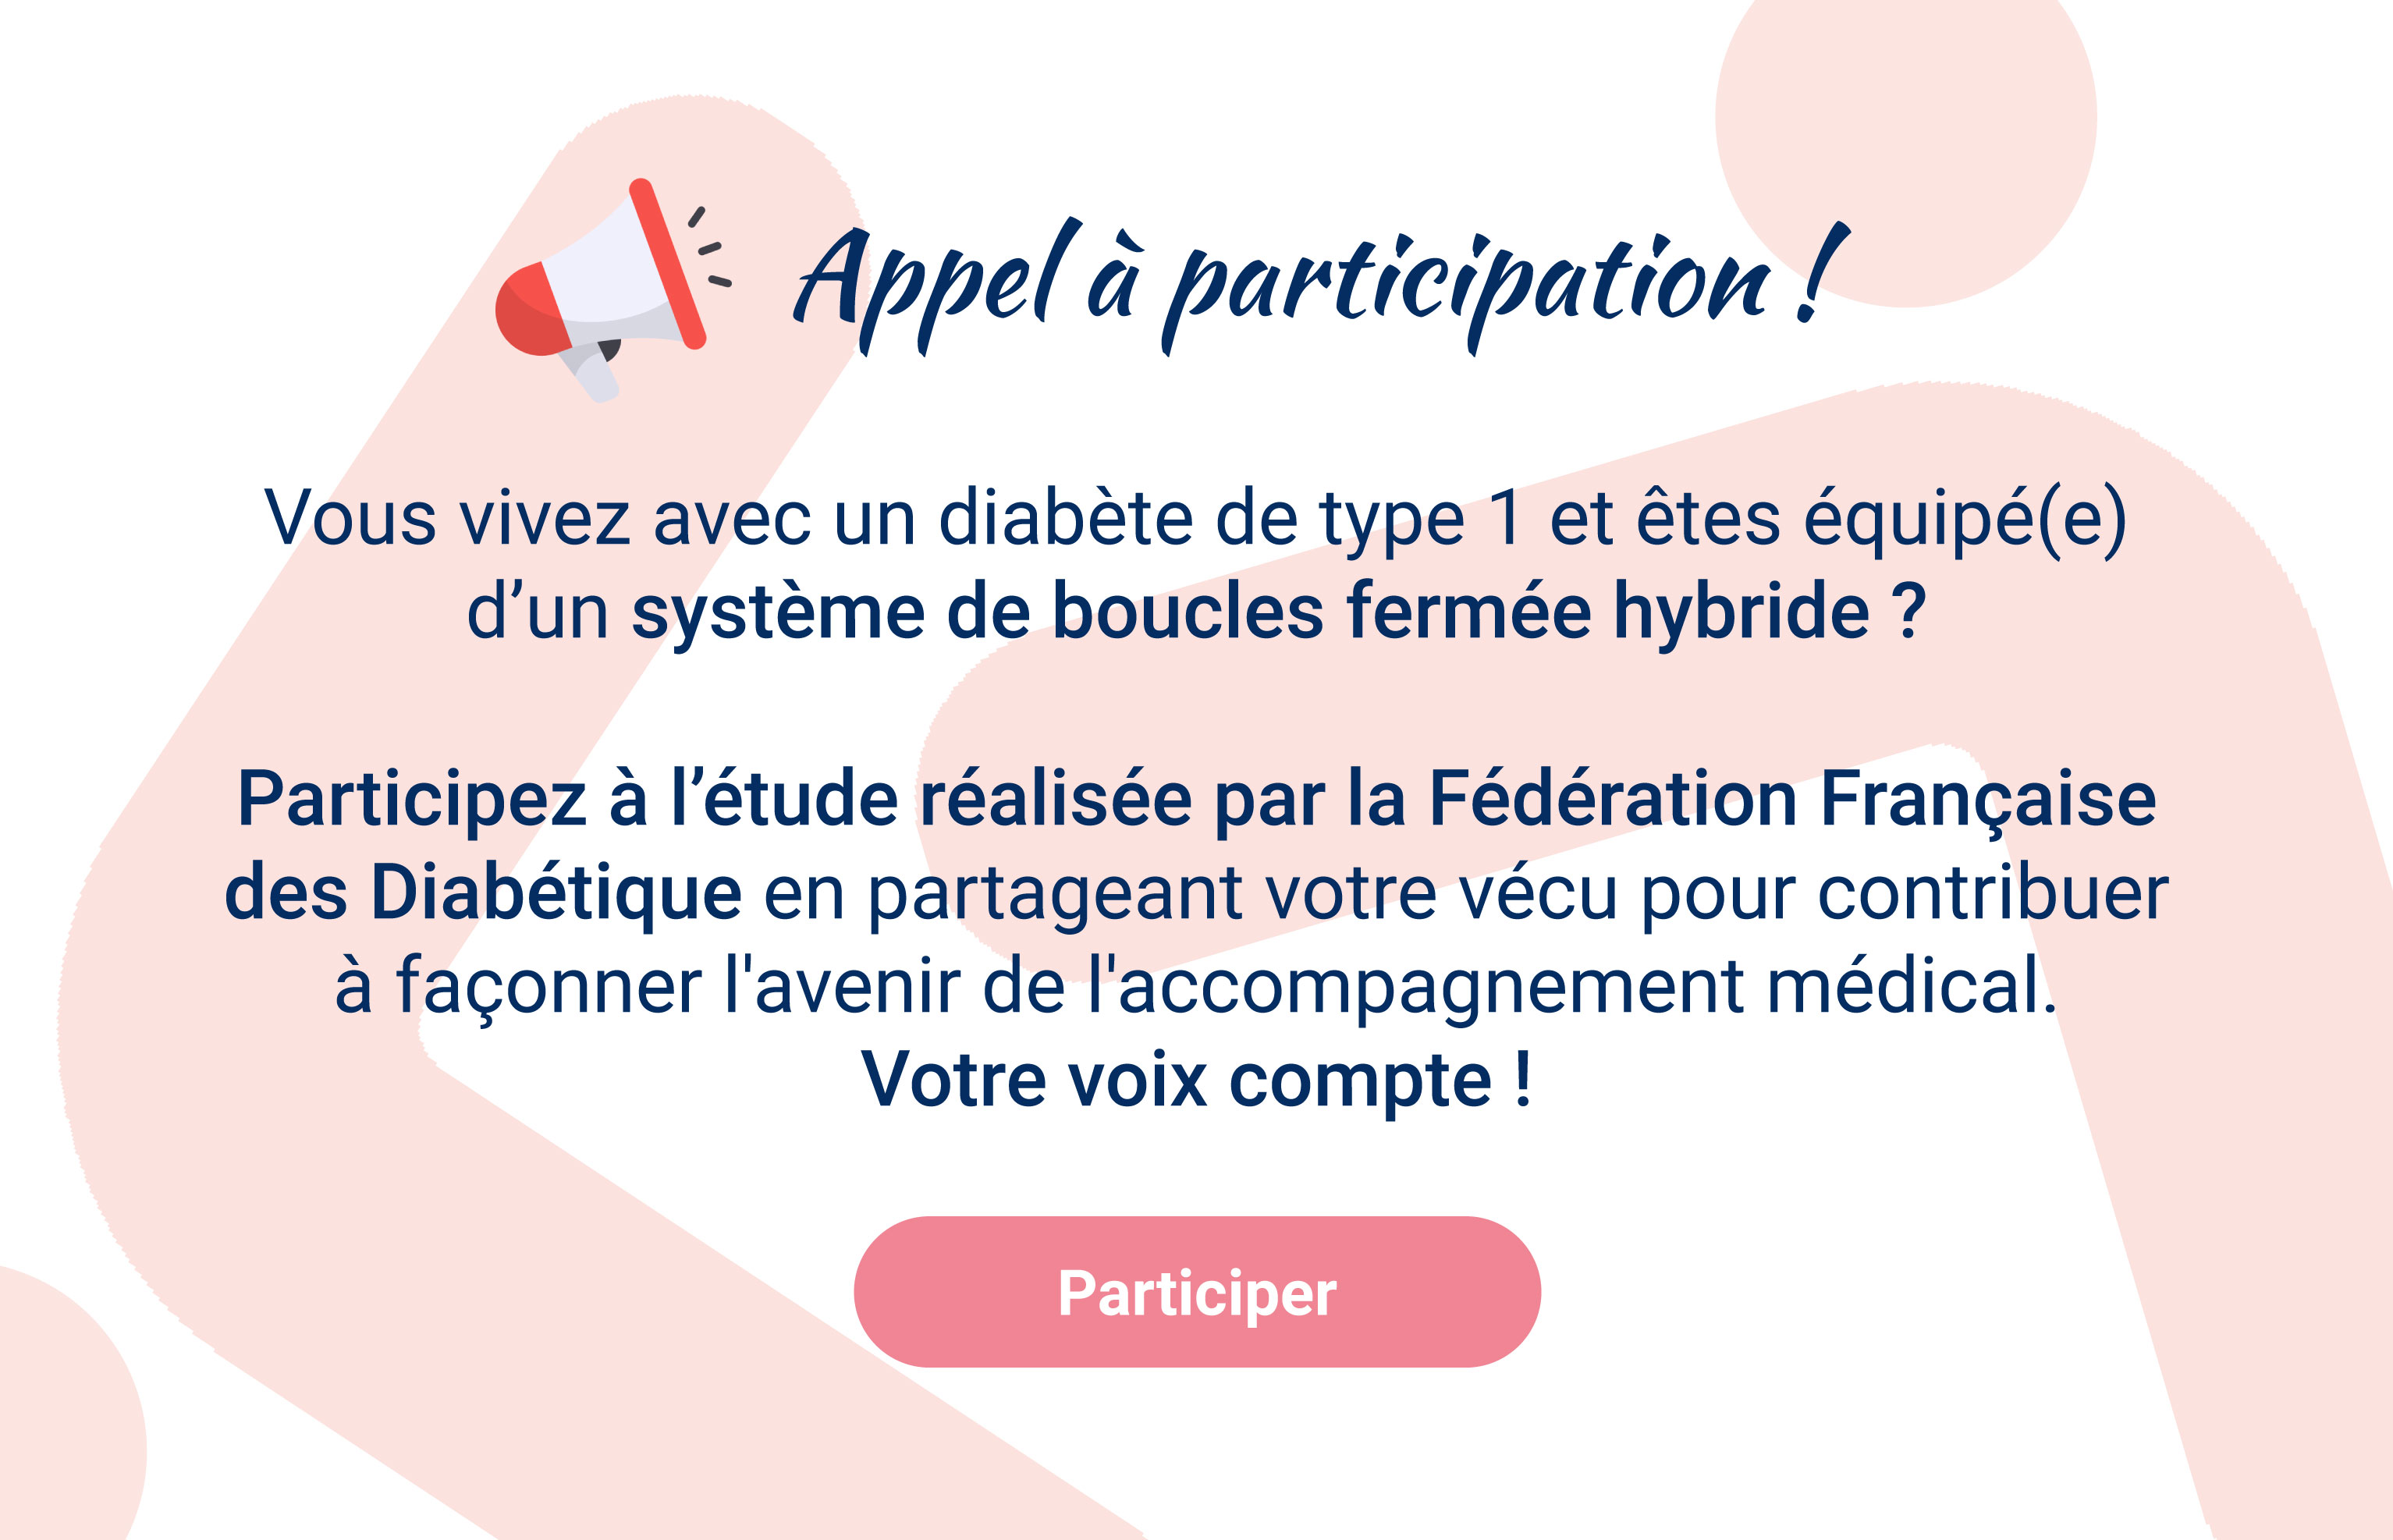 Participez à l'étude de la Fédération Française des Diabétiques